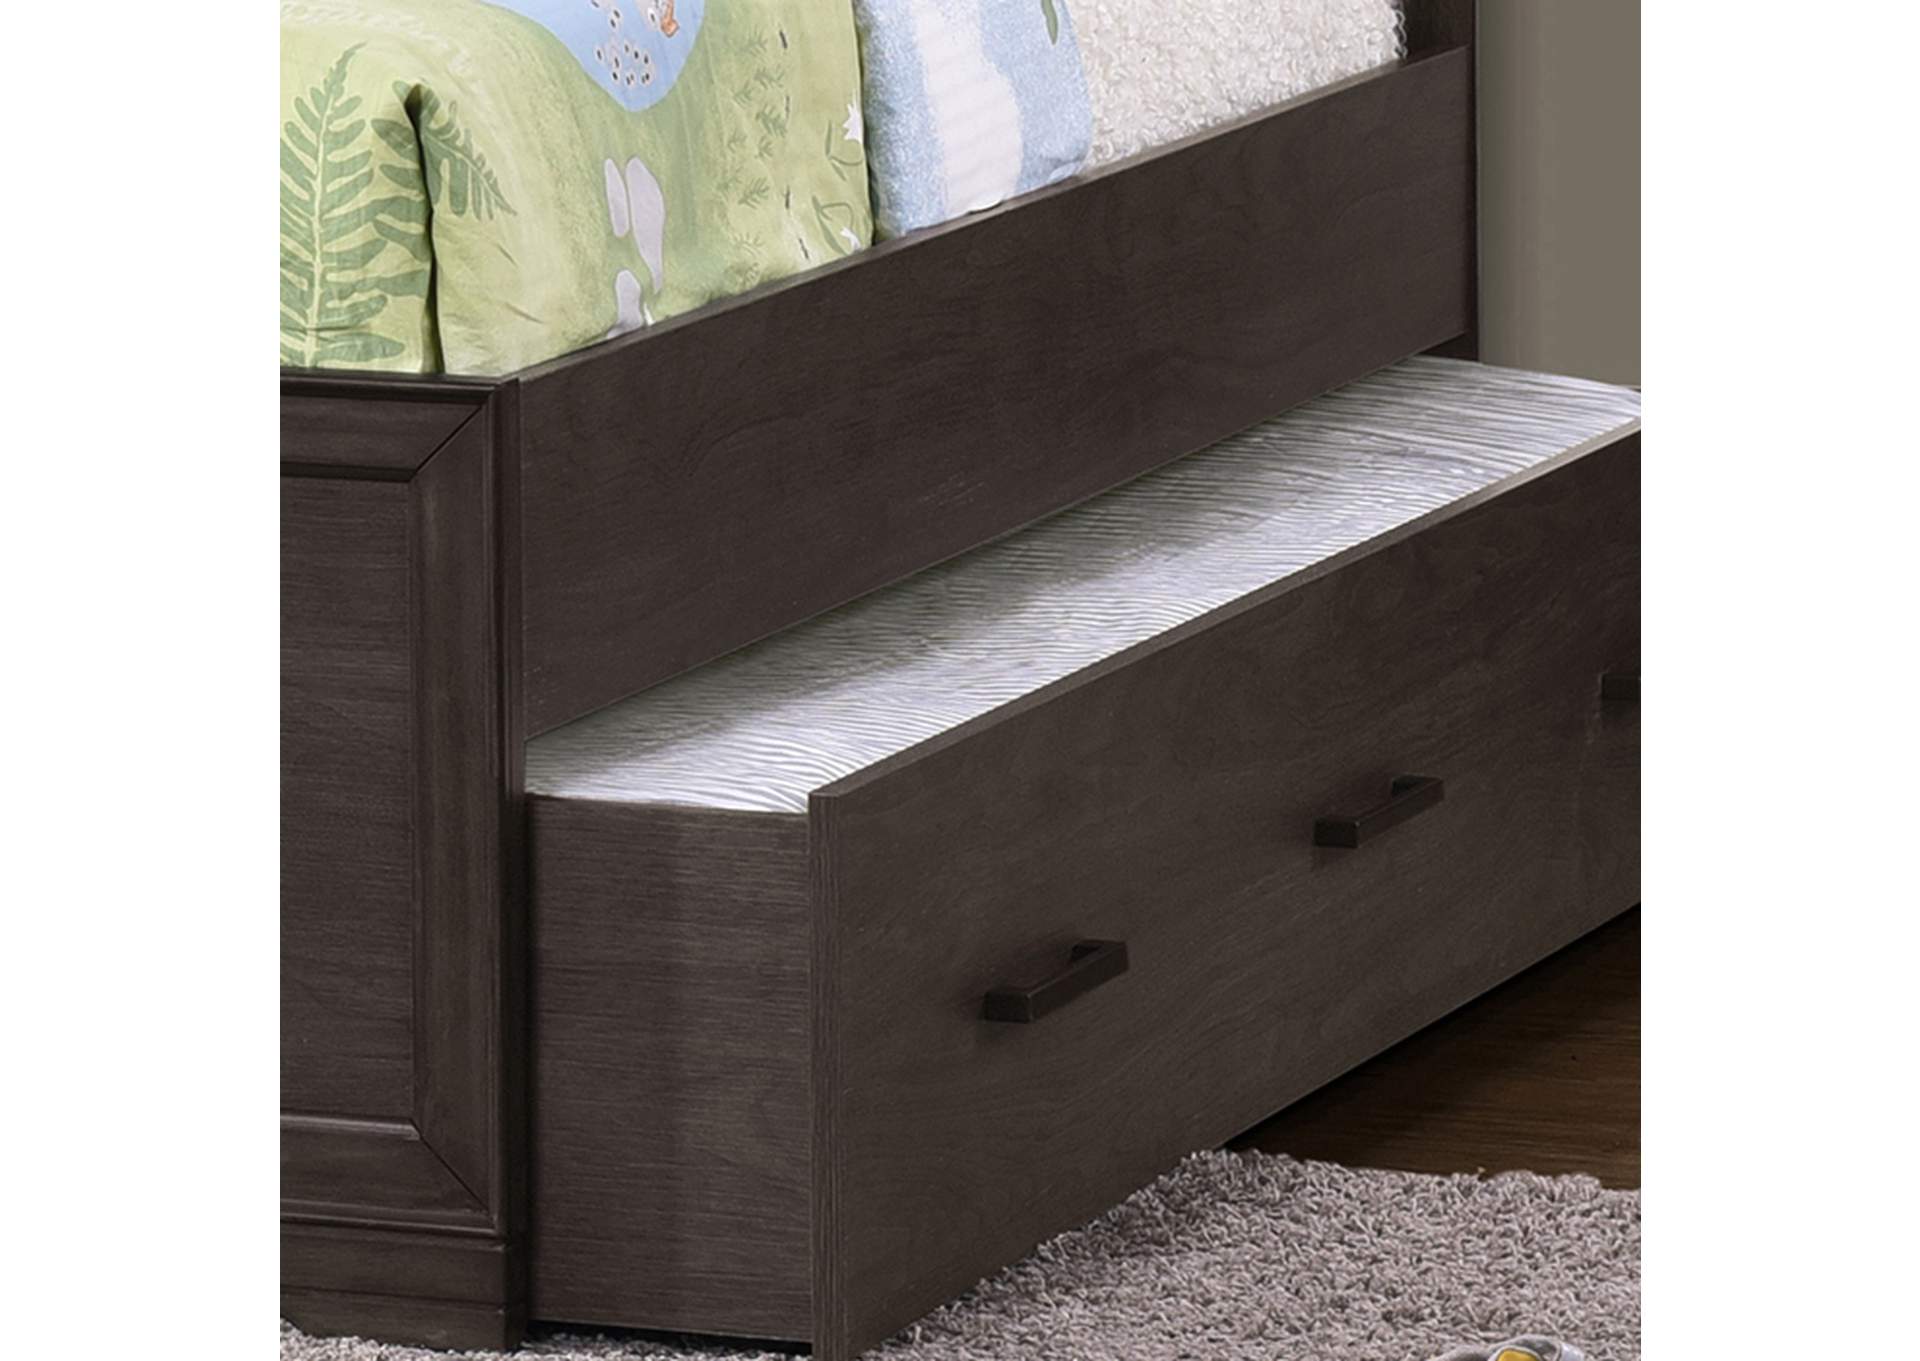 Kids Trundle Bed Unit in Espresso Brown,Pulaski Furniture